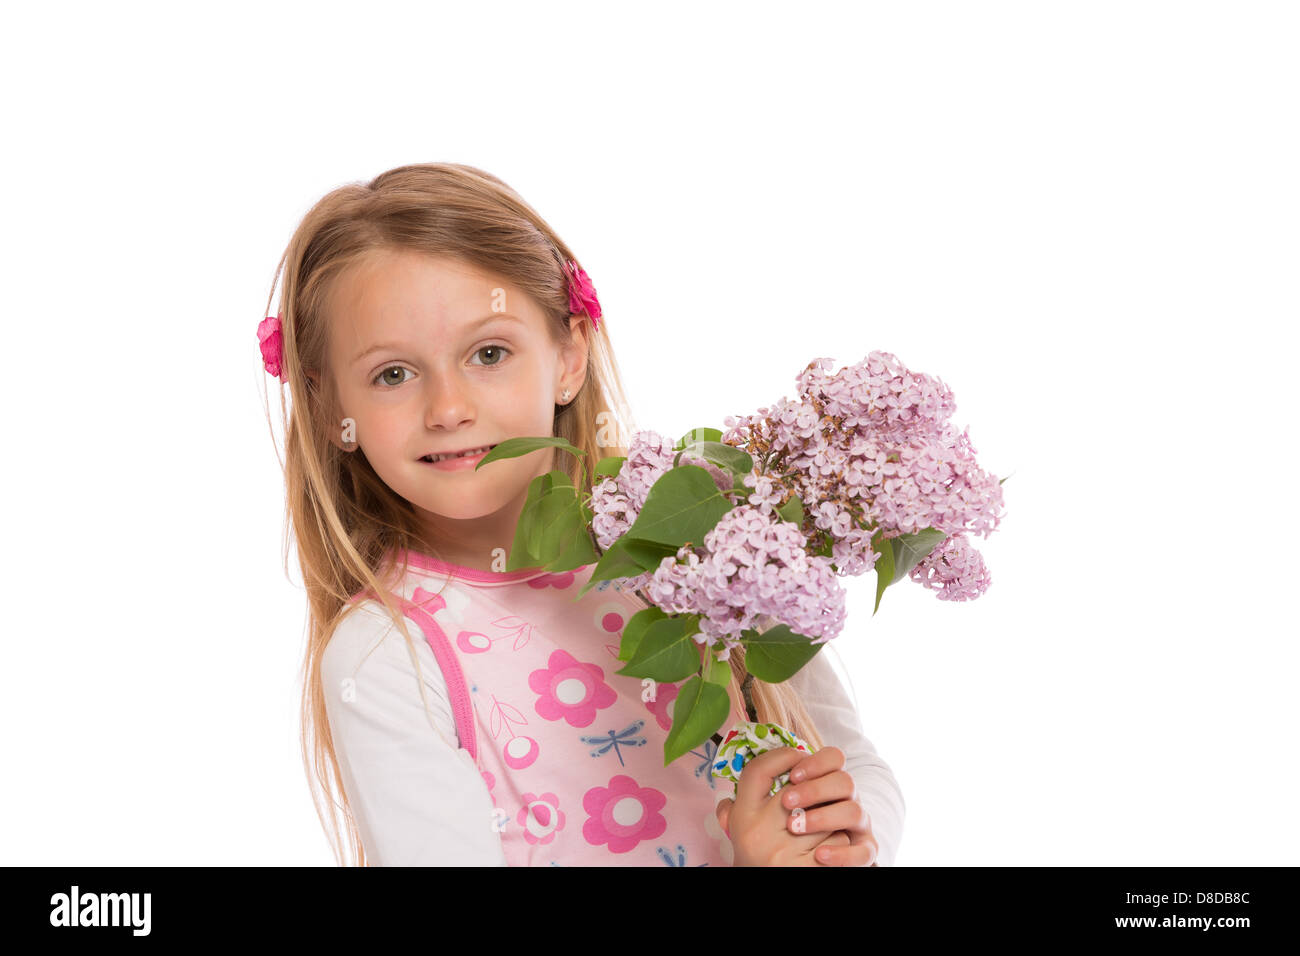 Glückliche kleine Mädchen mit langen Haaren trägt Sommerkleid und lila Blumen hält. Isoliert auf weißem Hintergrund. Stockfoto